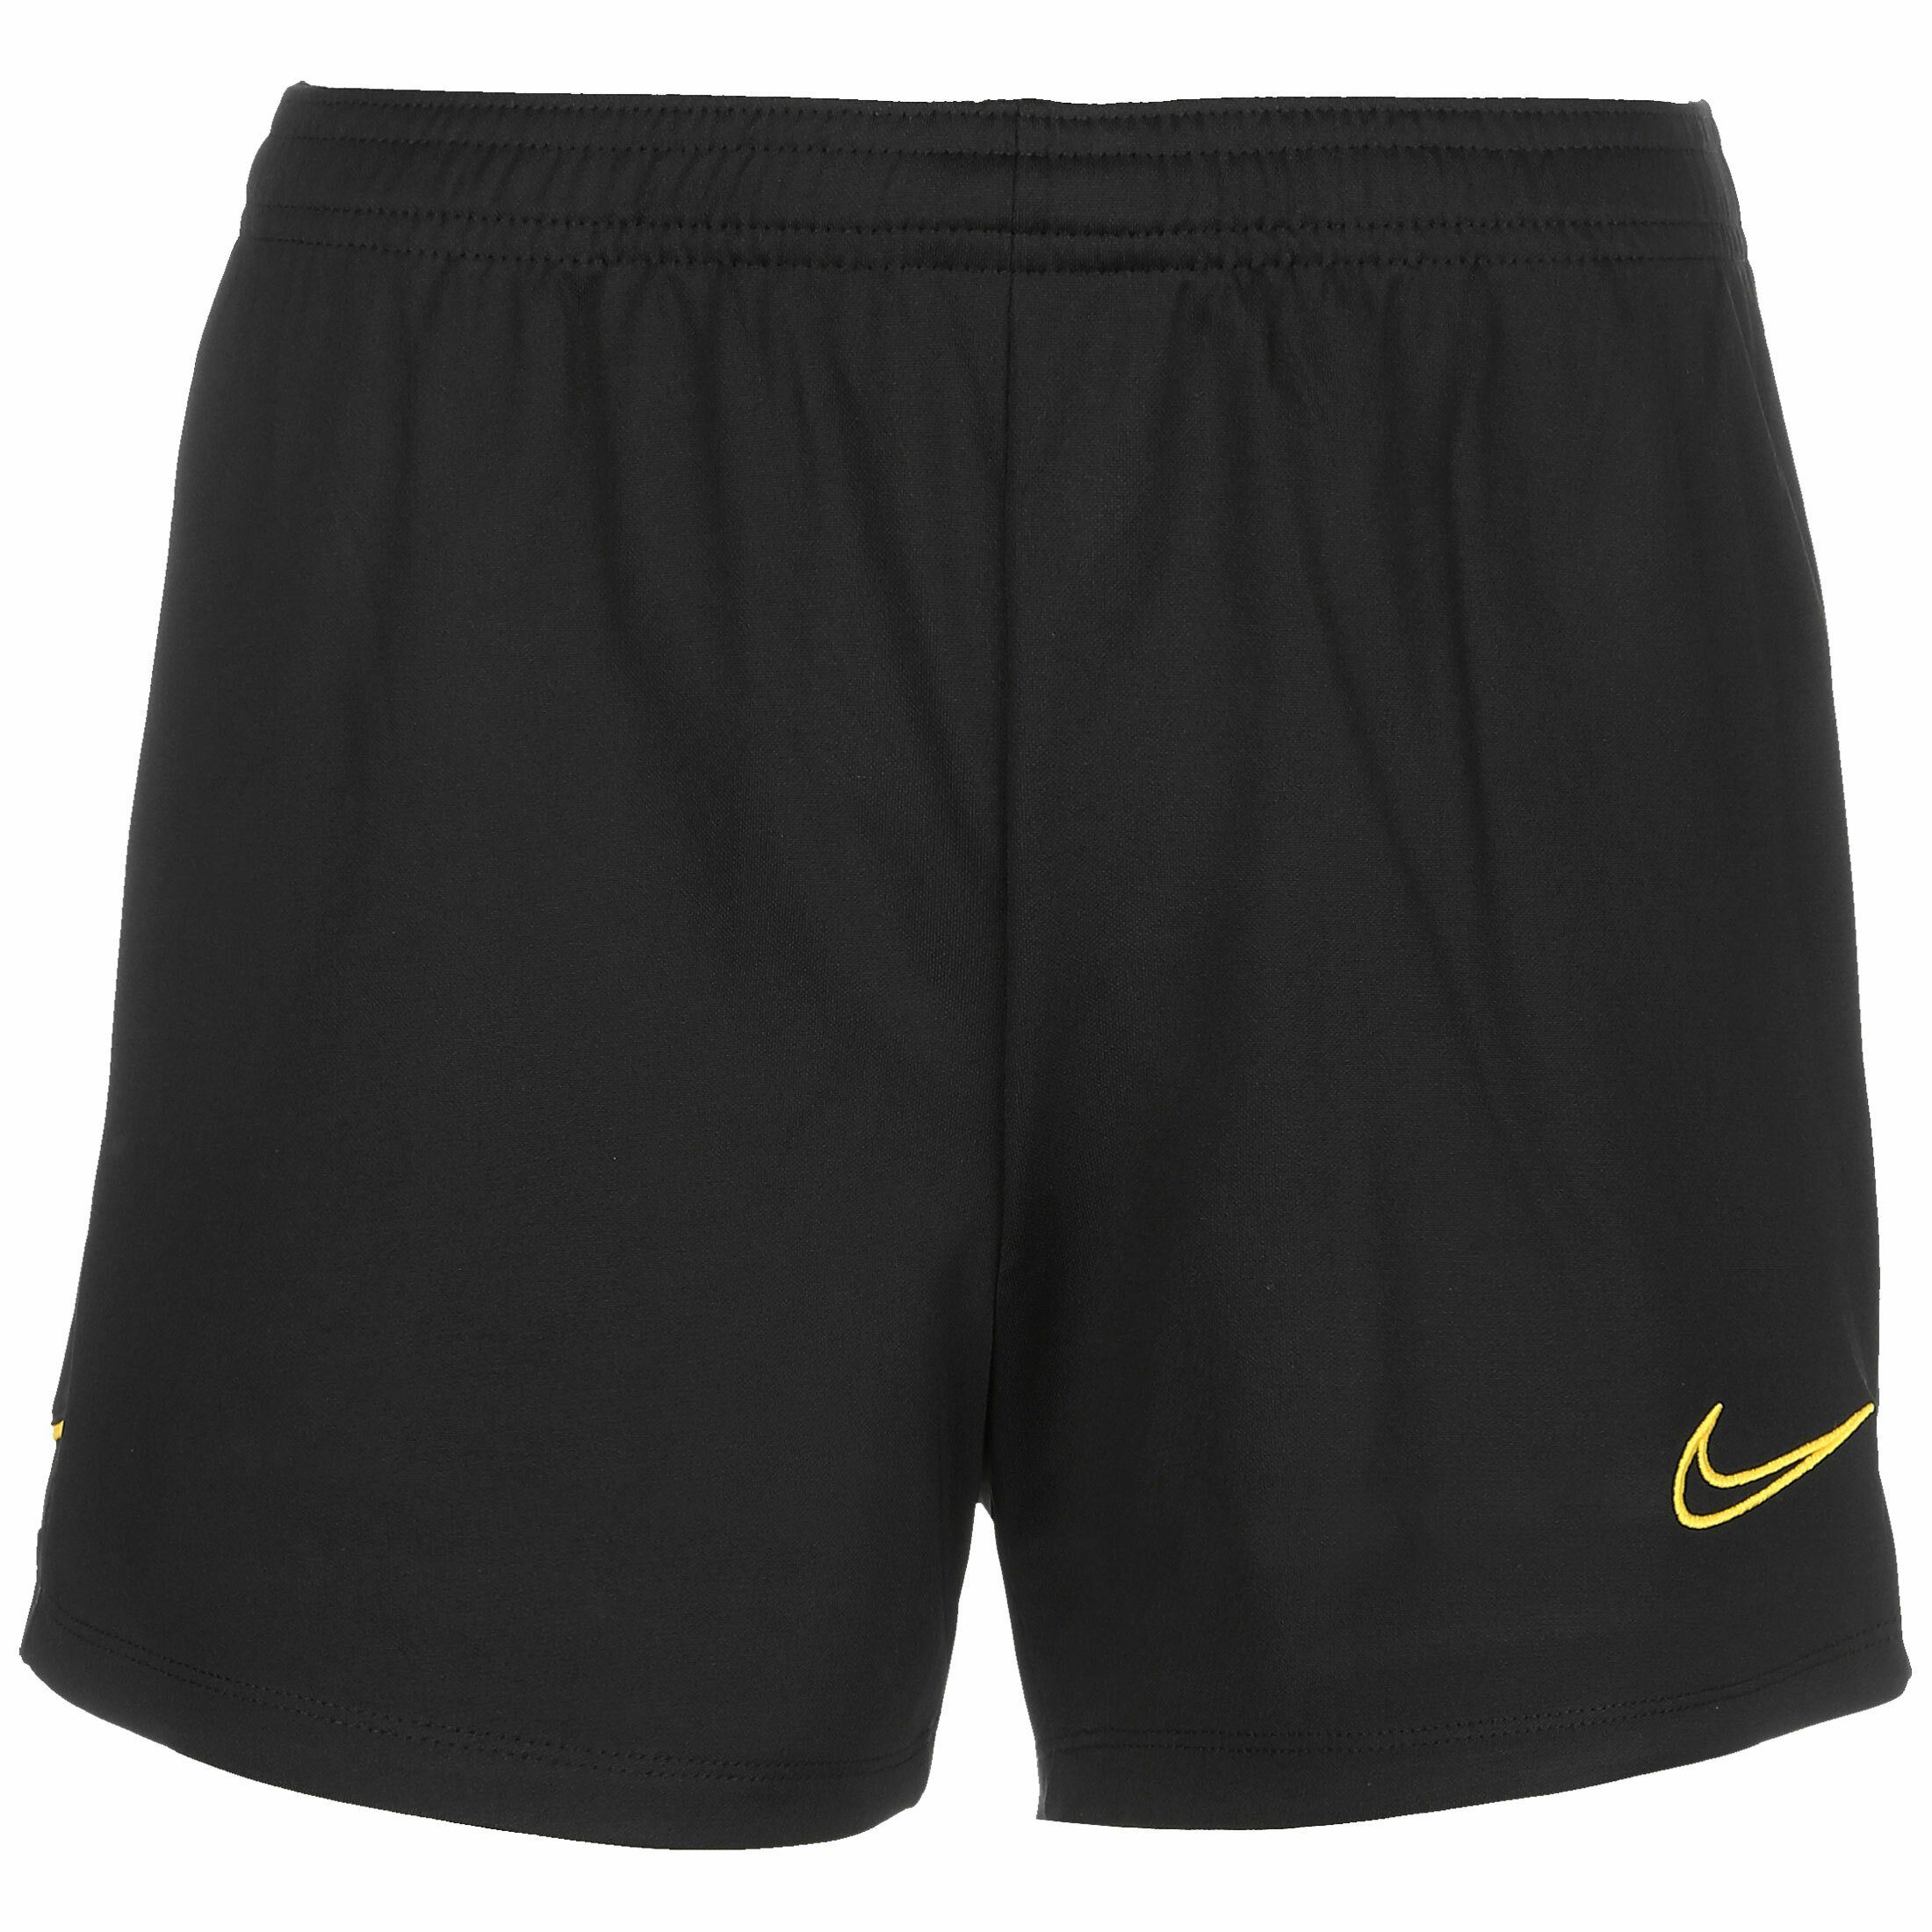 Nike Damen Shorts & Bermudas online kaufen | OTTO